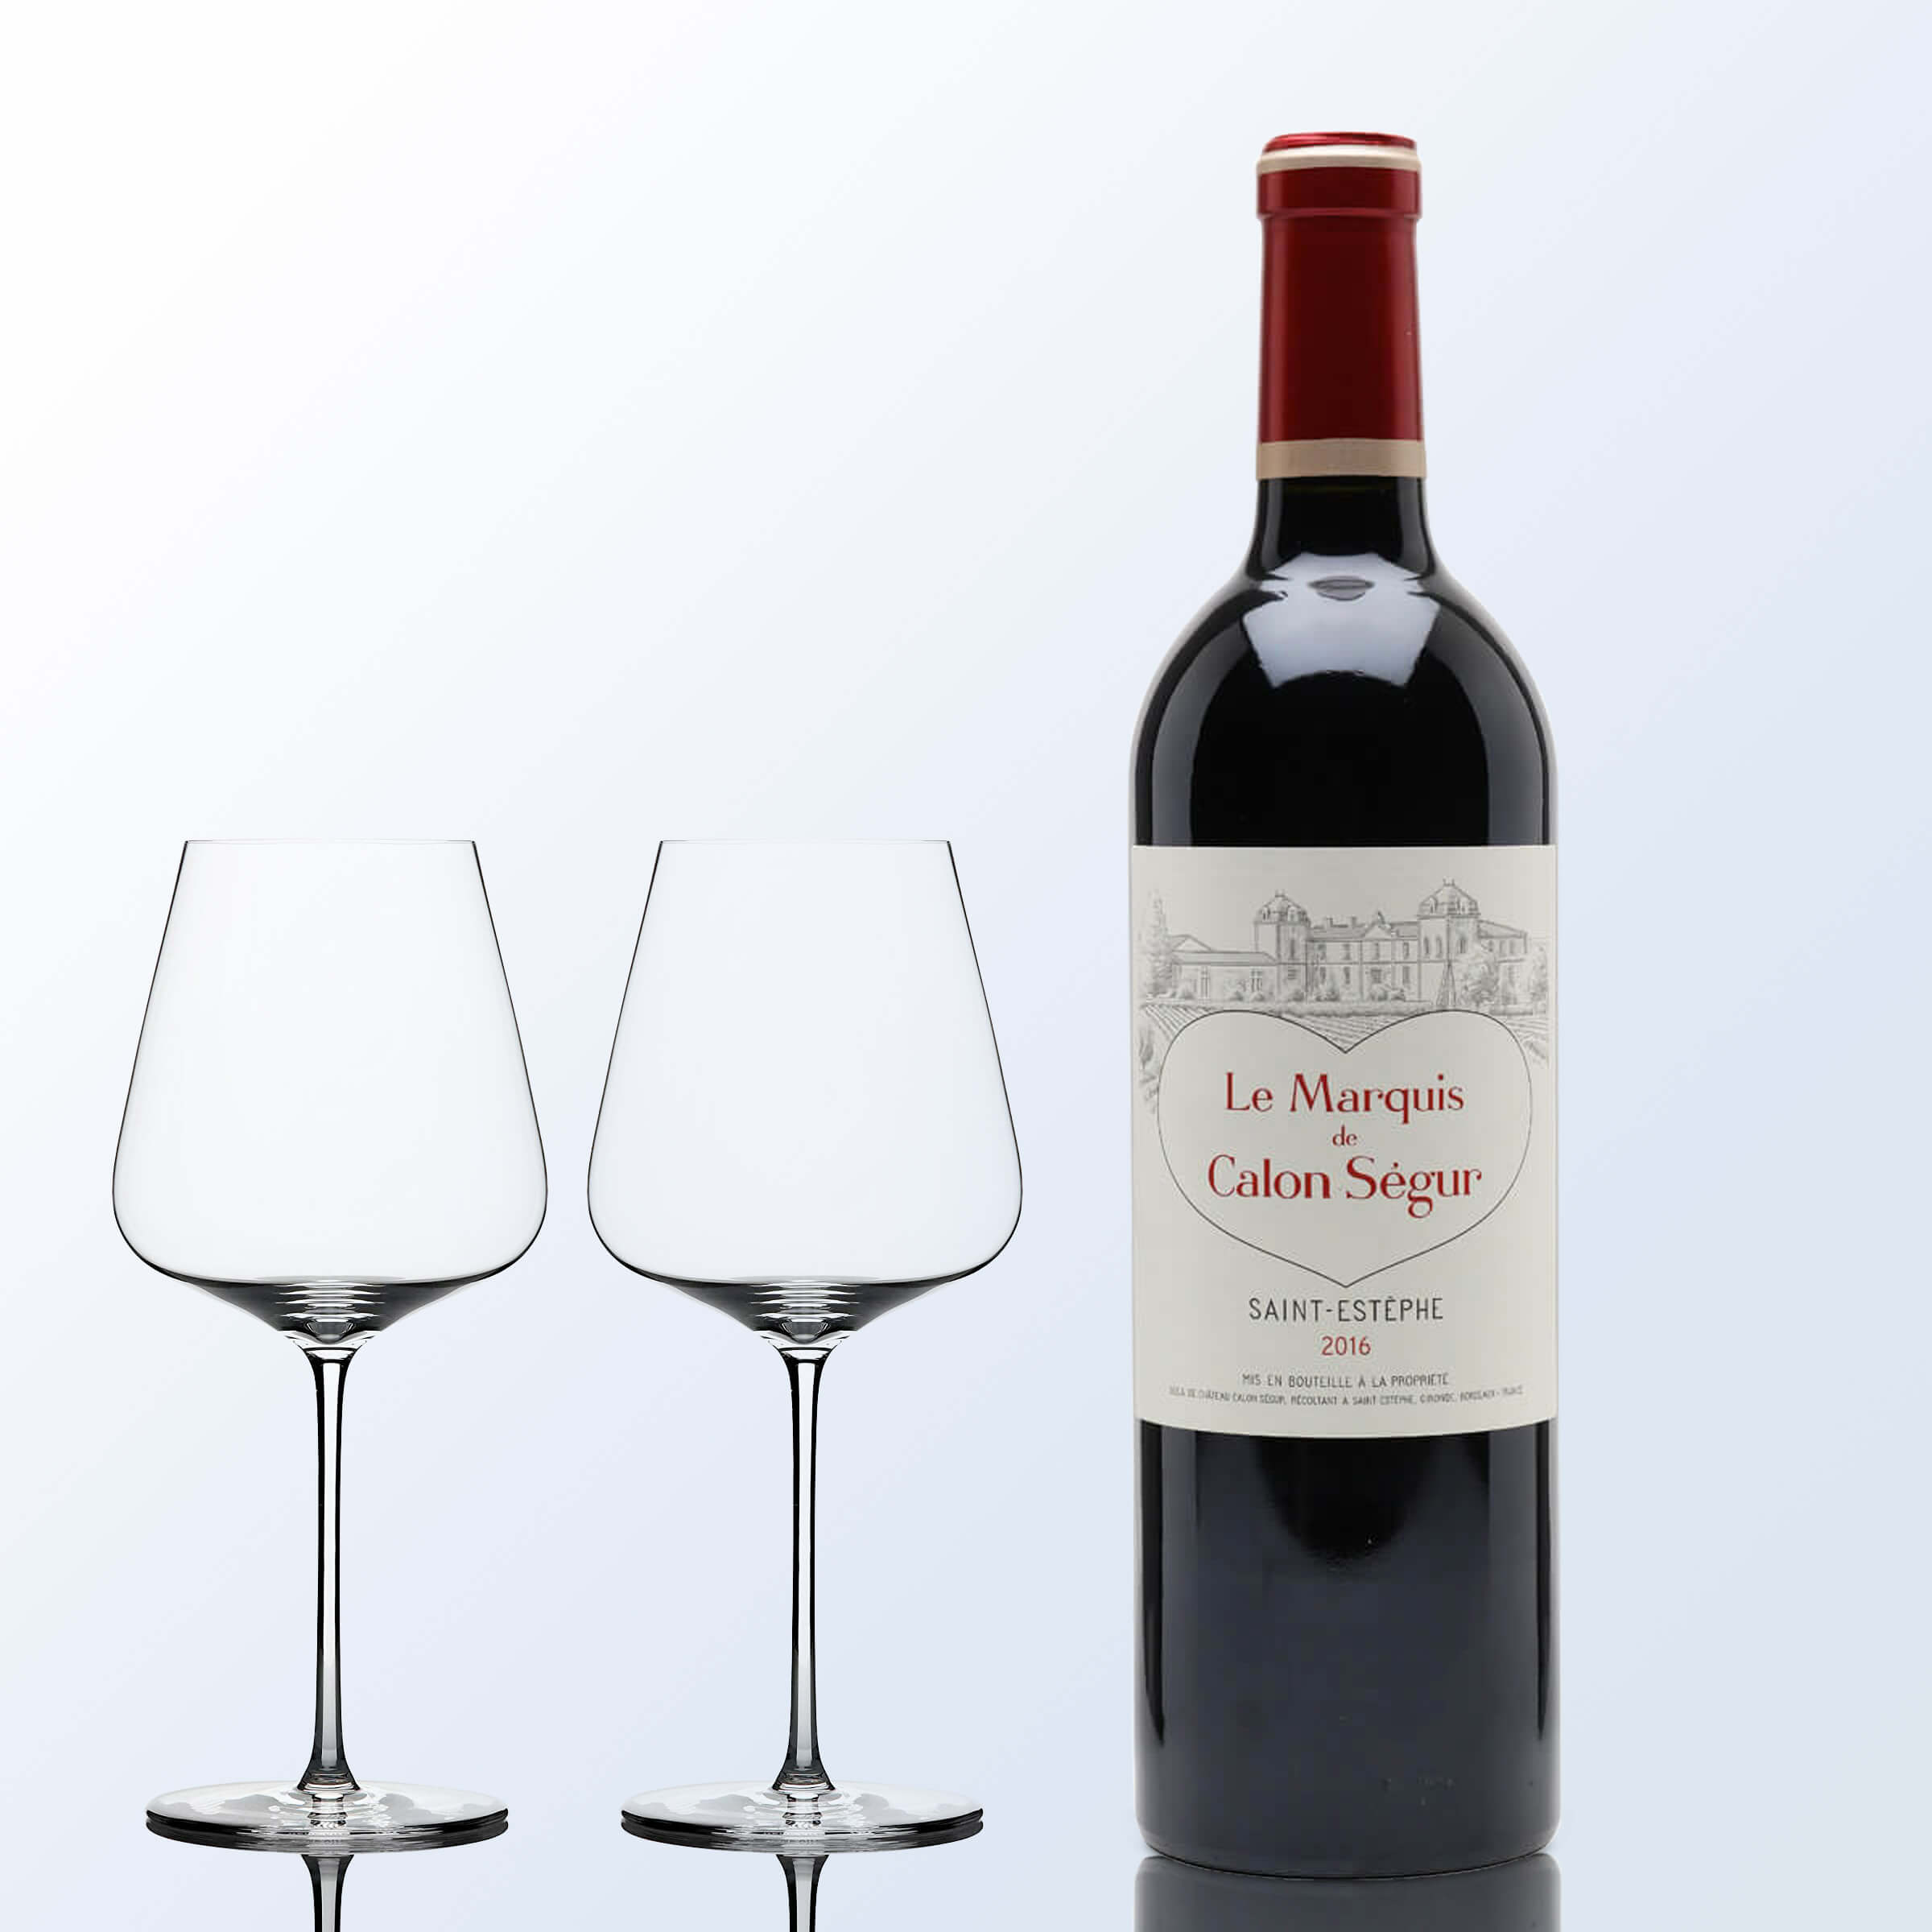 生日禮物| Le Marquis de Calon Ségur 2016凱隆世家副牌& Zalto紅酒杯 套裝 （人像雕刻）客製化禮物 - Design Your Own Wine